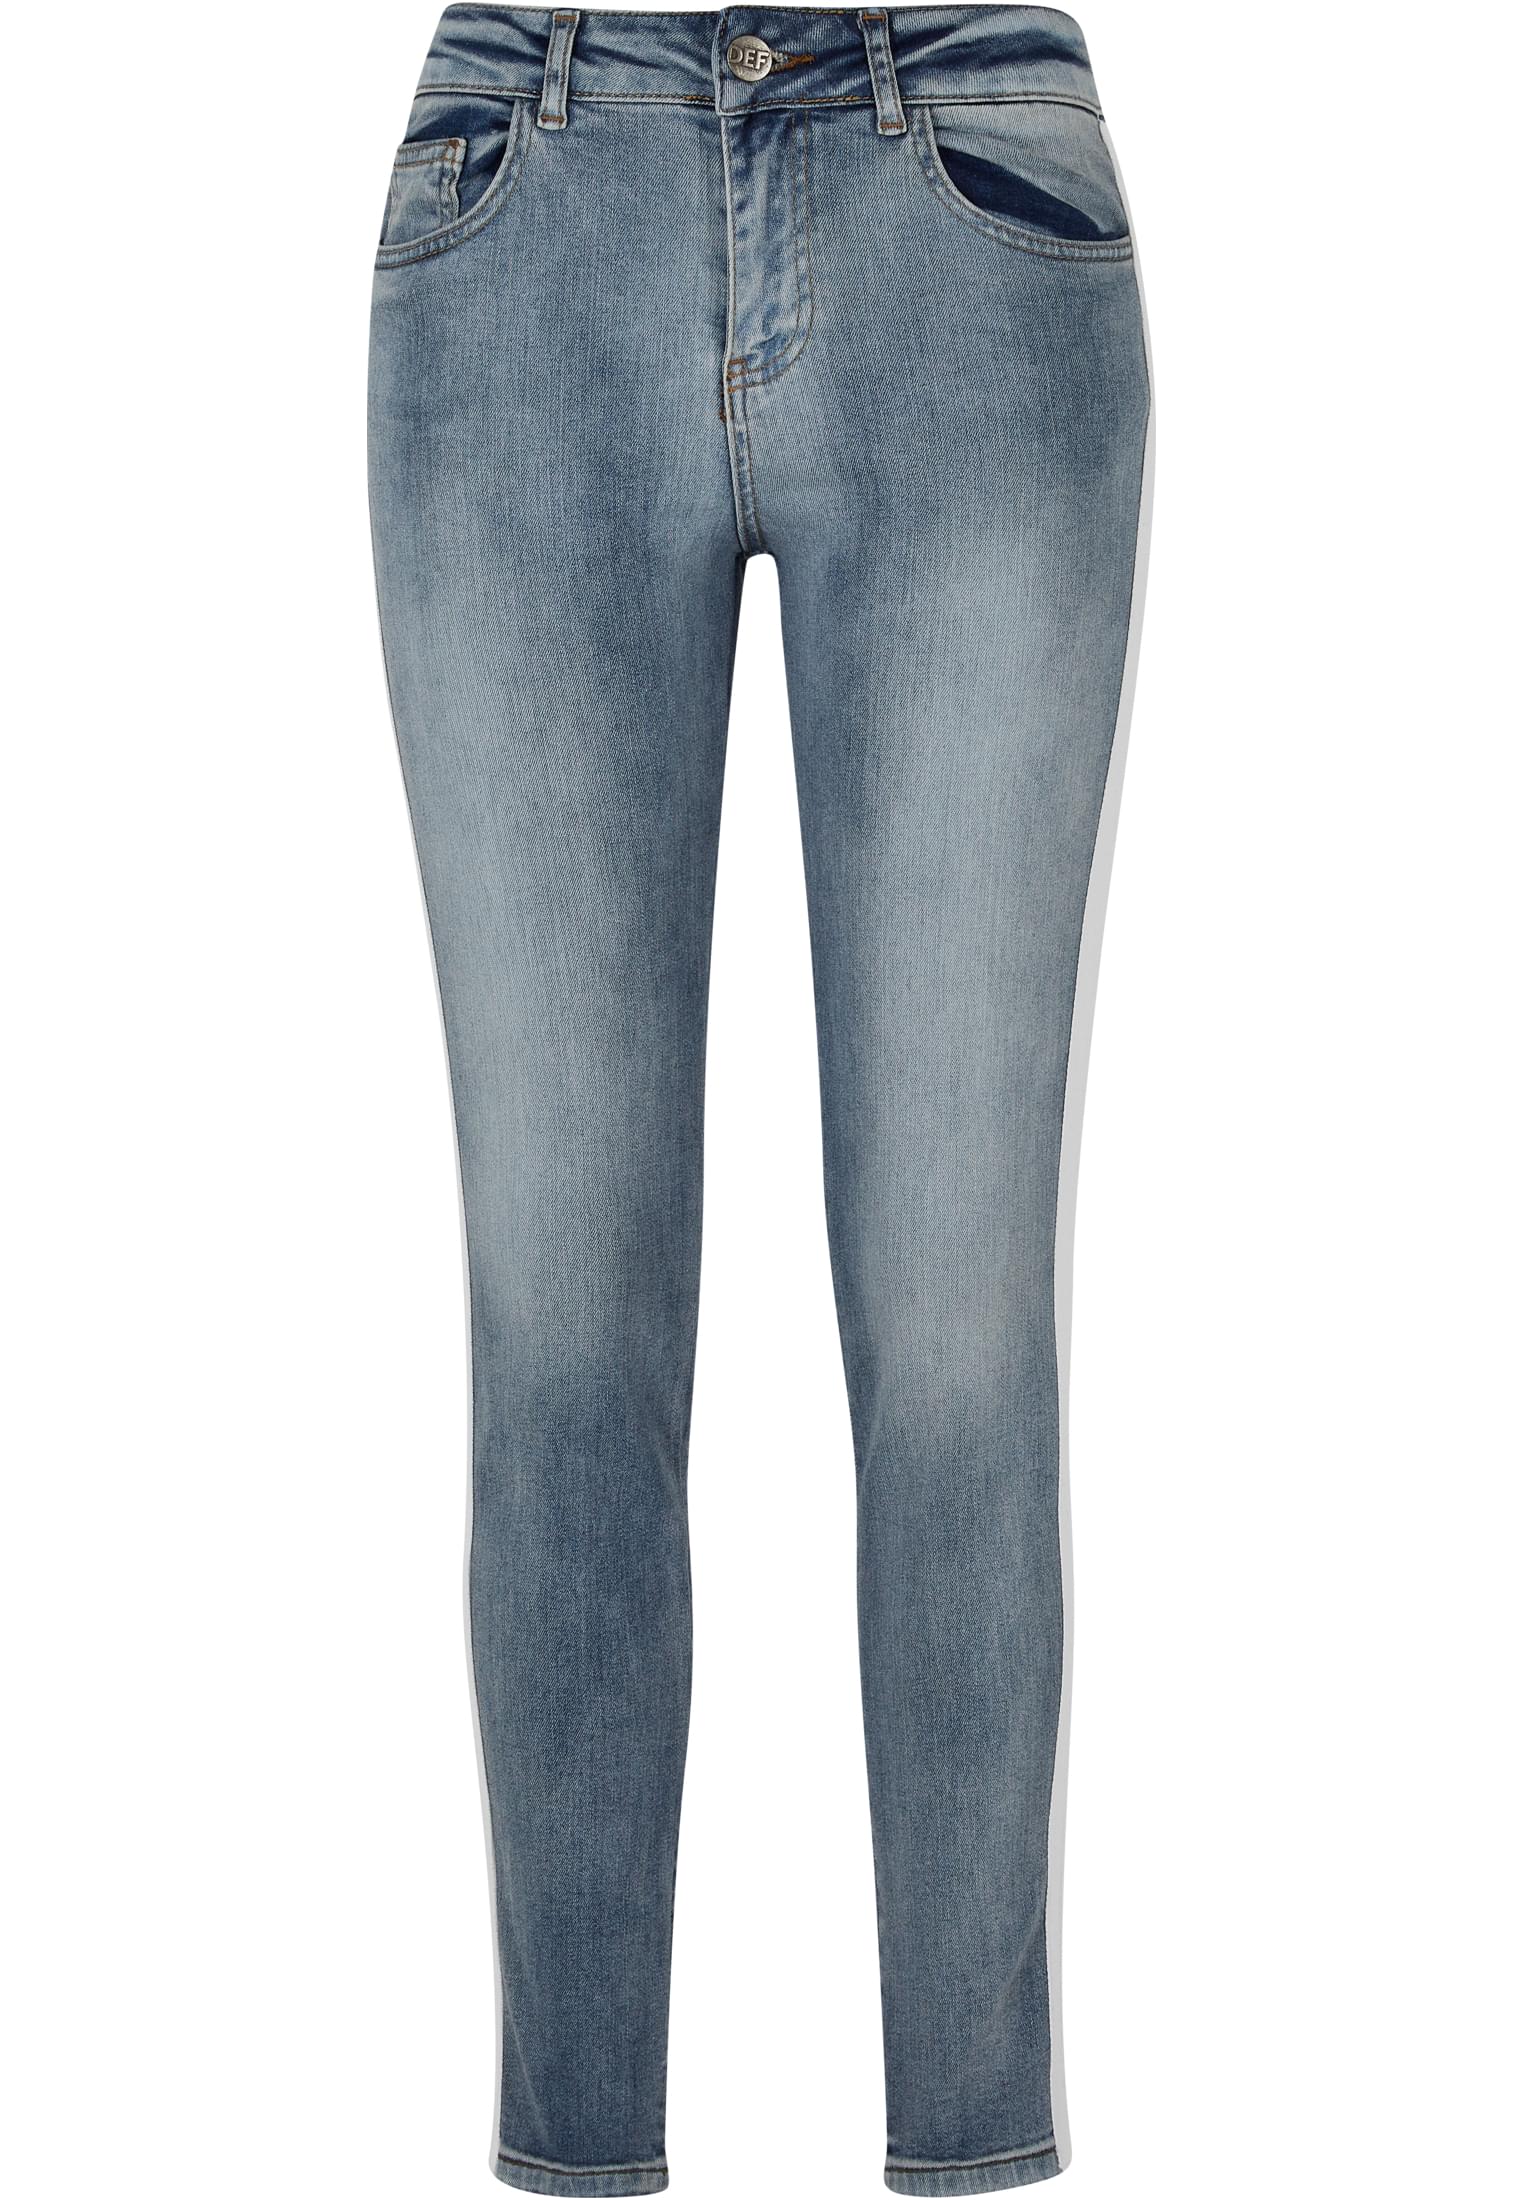 Rayar Skinny Jeans-DFLJS126